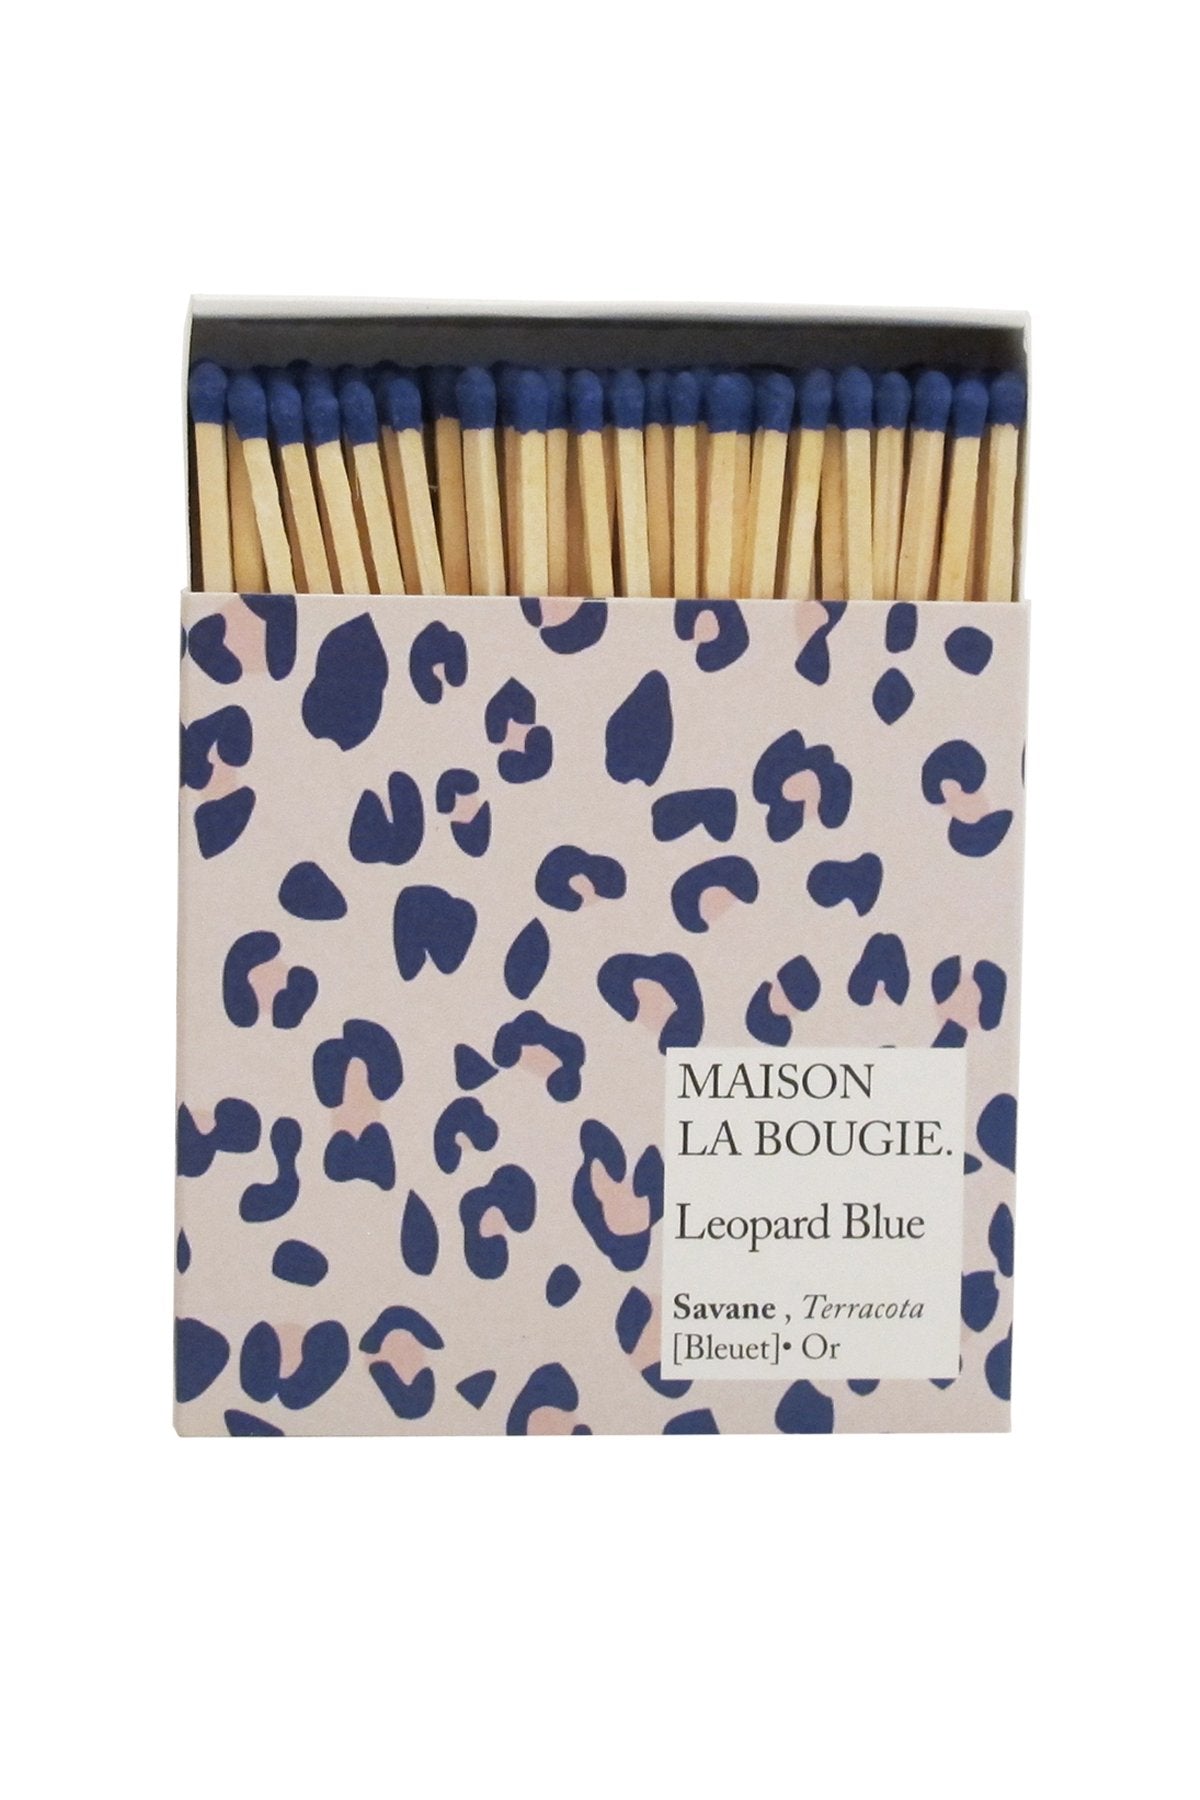 LÉOPARD BLUE matches | Maison La Bougie